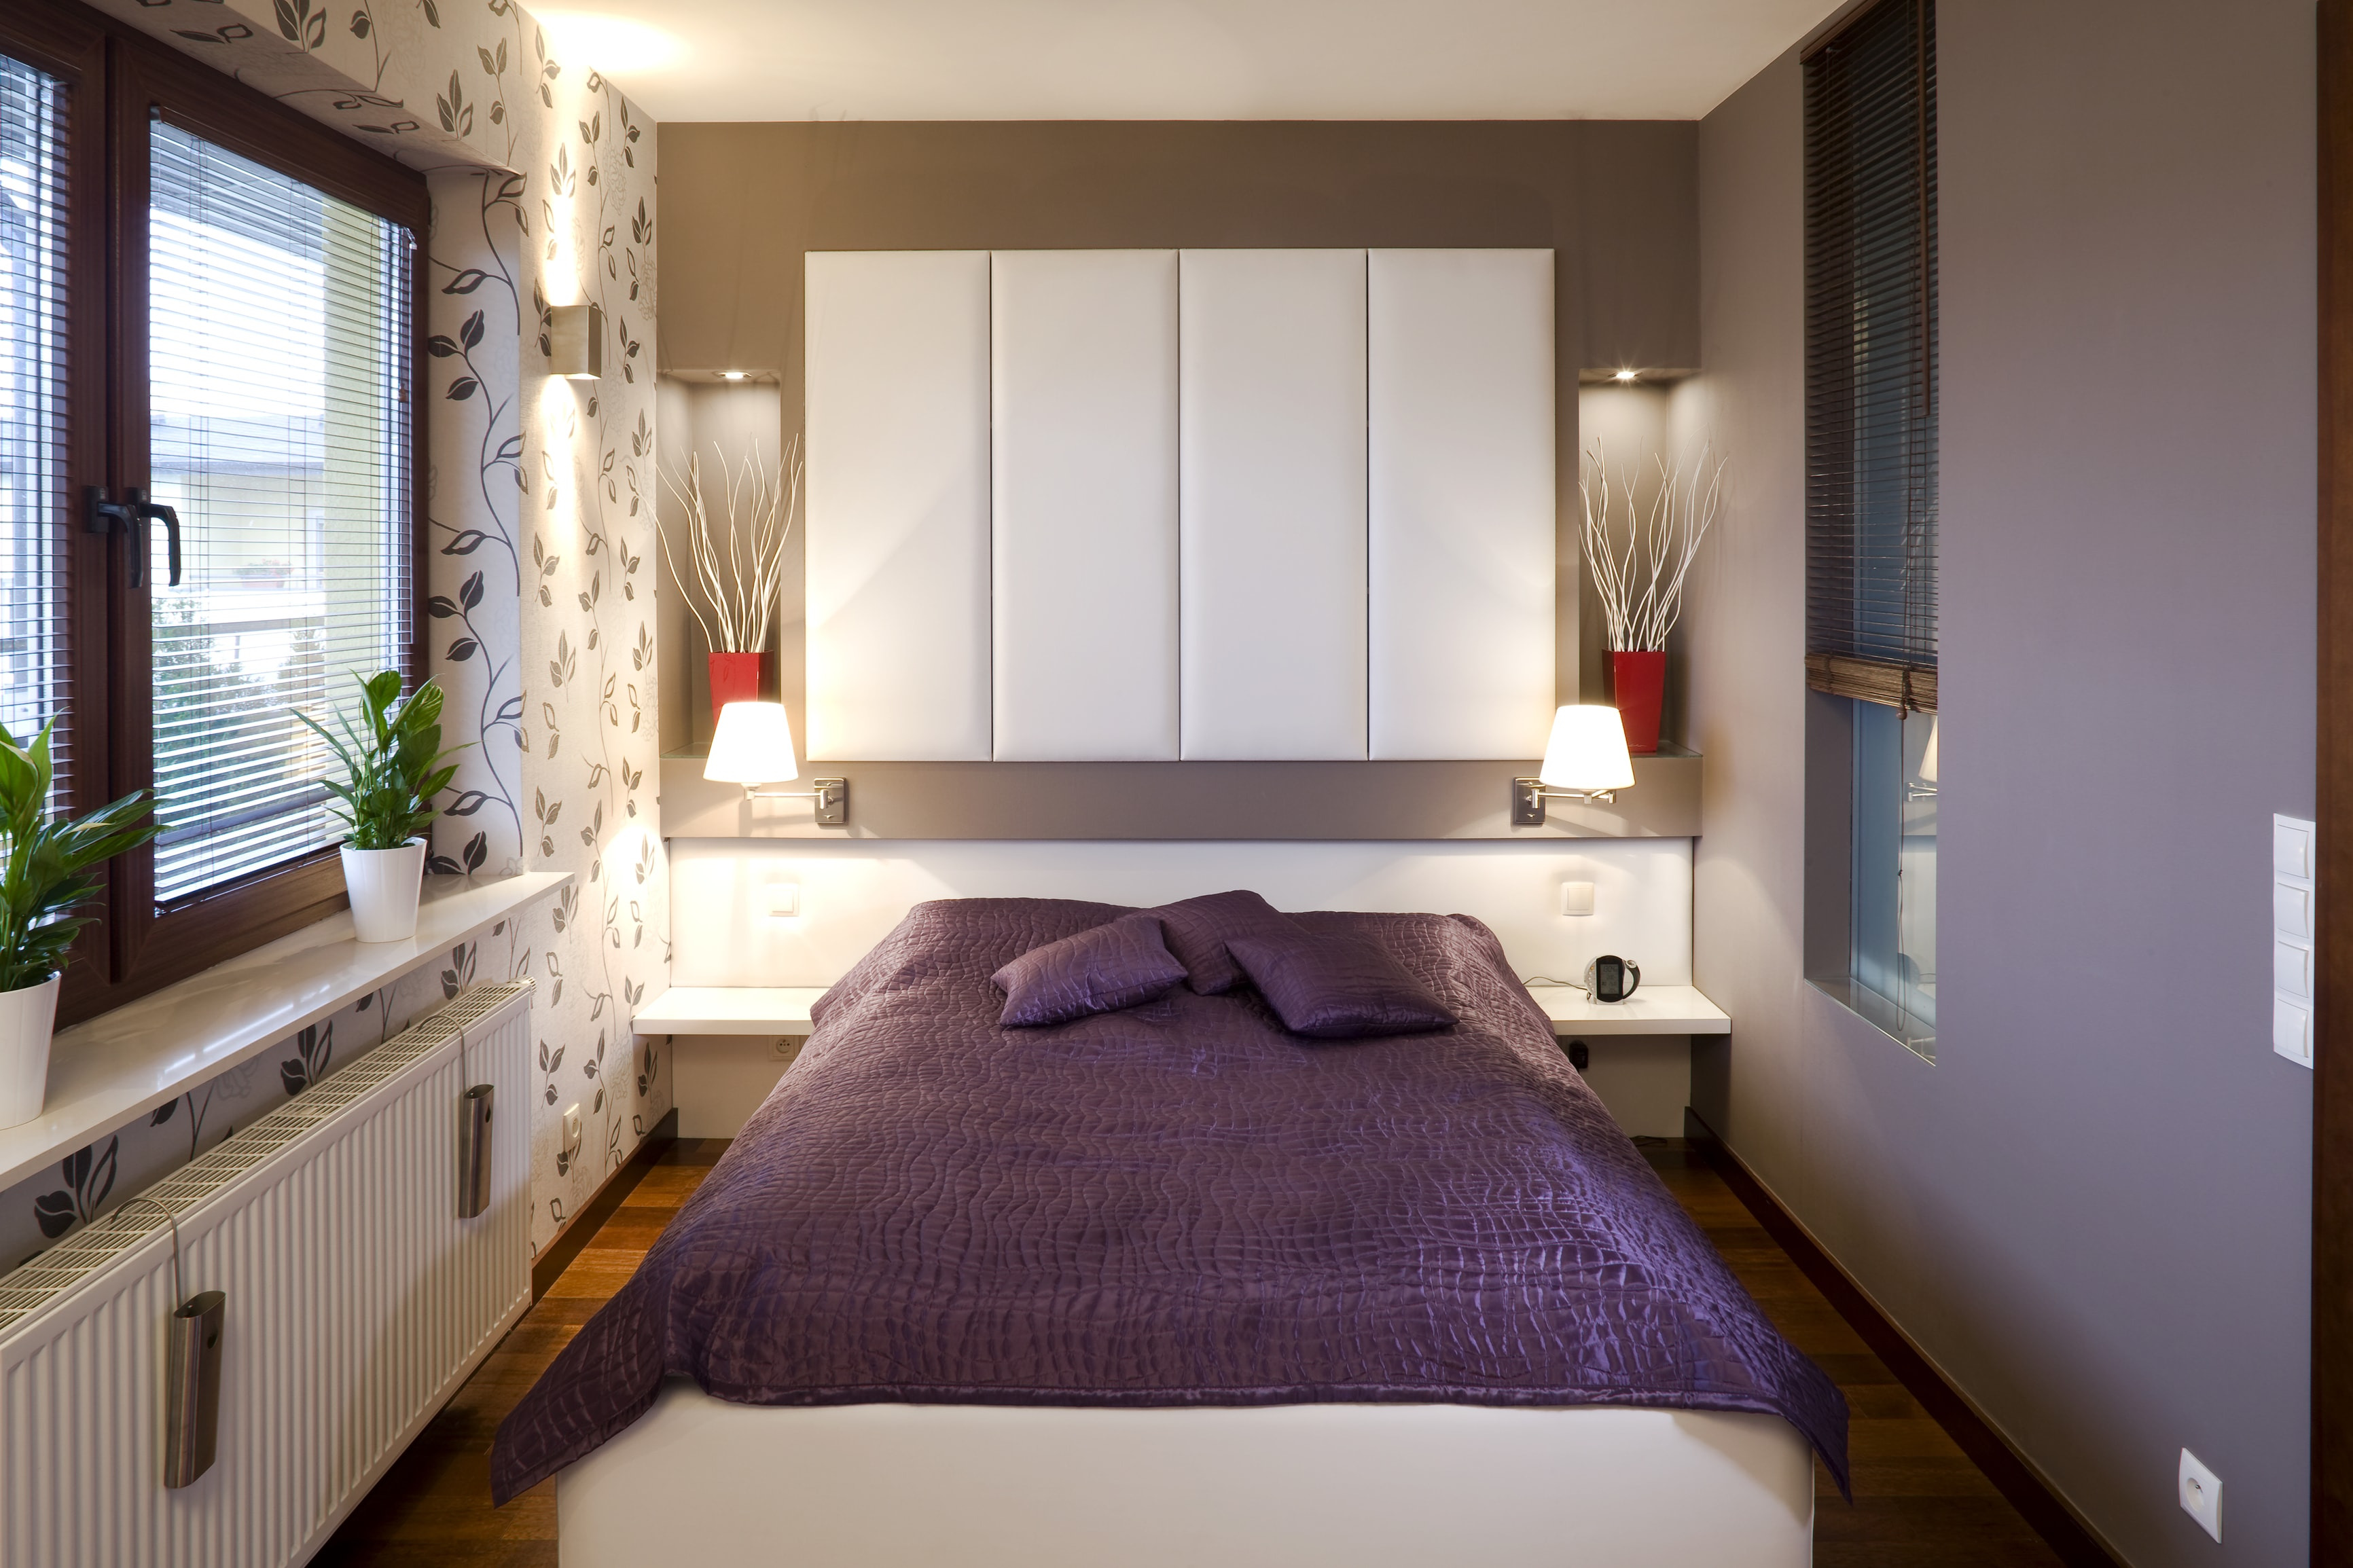 Łóżko do małej sypialni - jak wybrać odpowiedni model? 